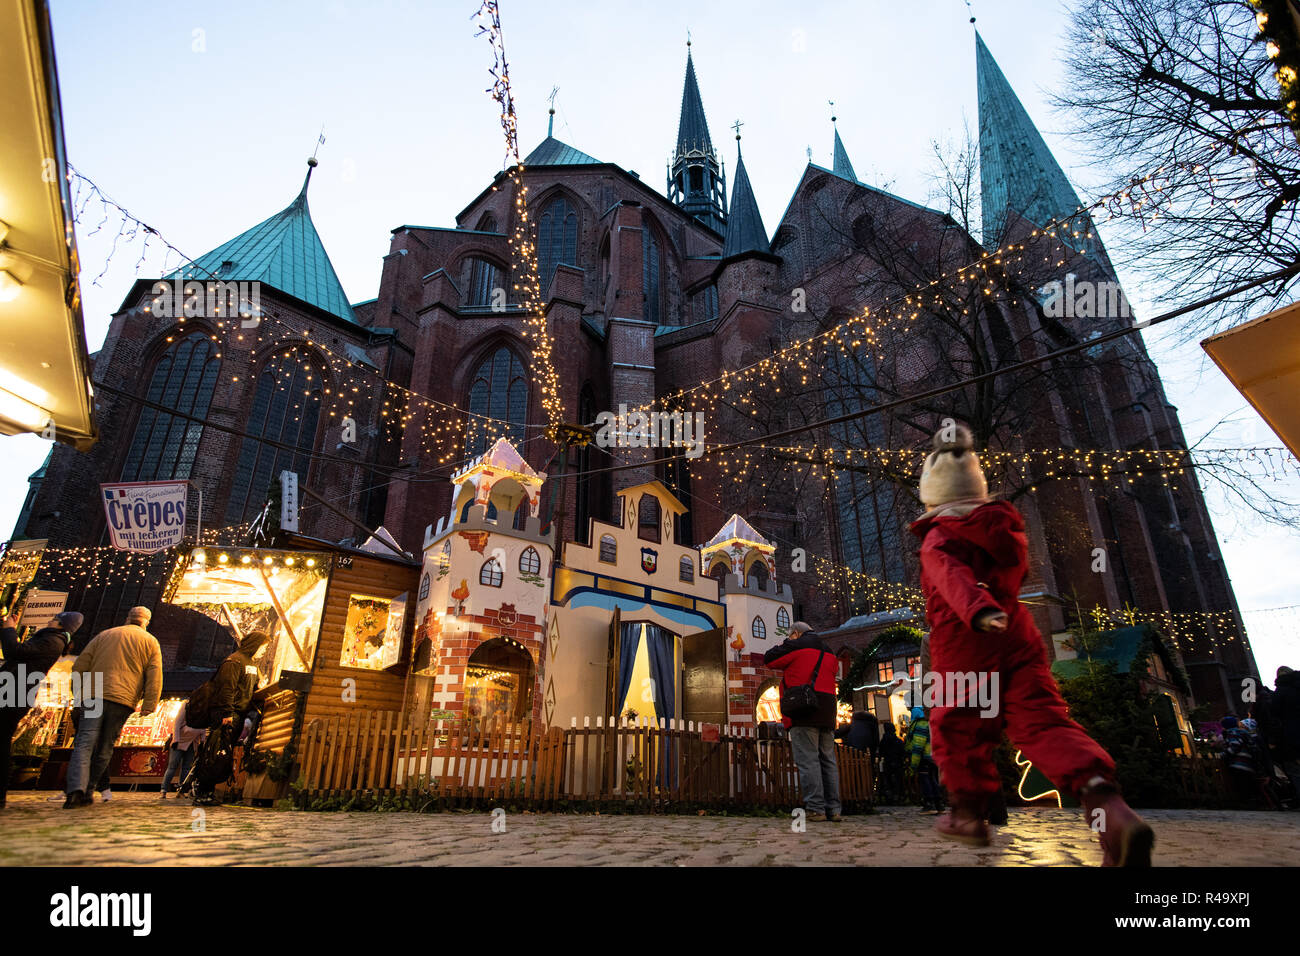 26. November 2018, Schleswig-Holstein, Lübeck: Ein Kind geht auf den Beginn der Lübecker Weihnachtsmarkt in der märchenwald am St. Mary's Church. Die ersten Weihnachtsmärkte öffnen am Tag nach dem Sonntag der Tod. Weitere werden in den nächsten Tagen folgen und einige werden offen zwischen den Tagen. Foto: Rainer Jensen/dpa Stockfoto